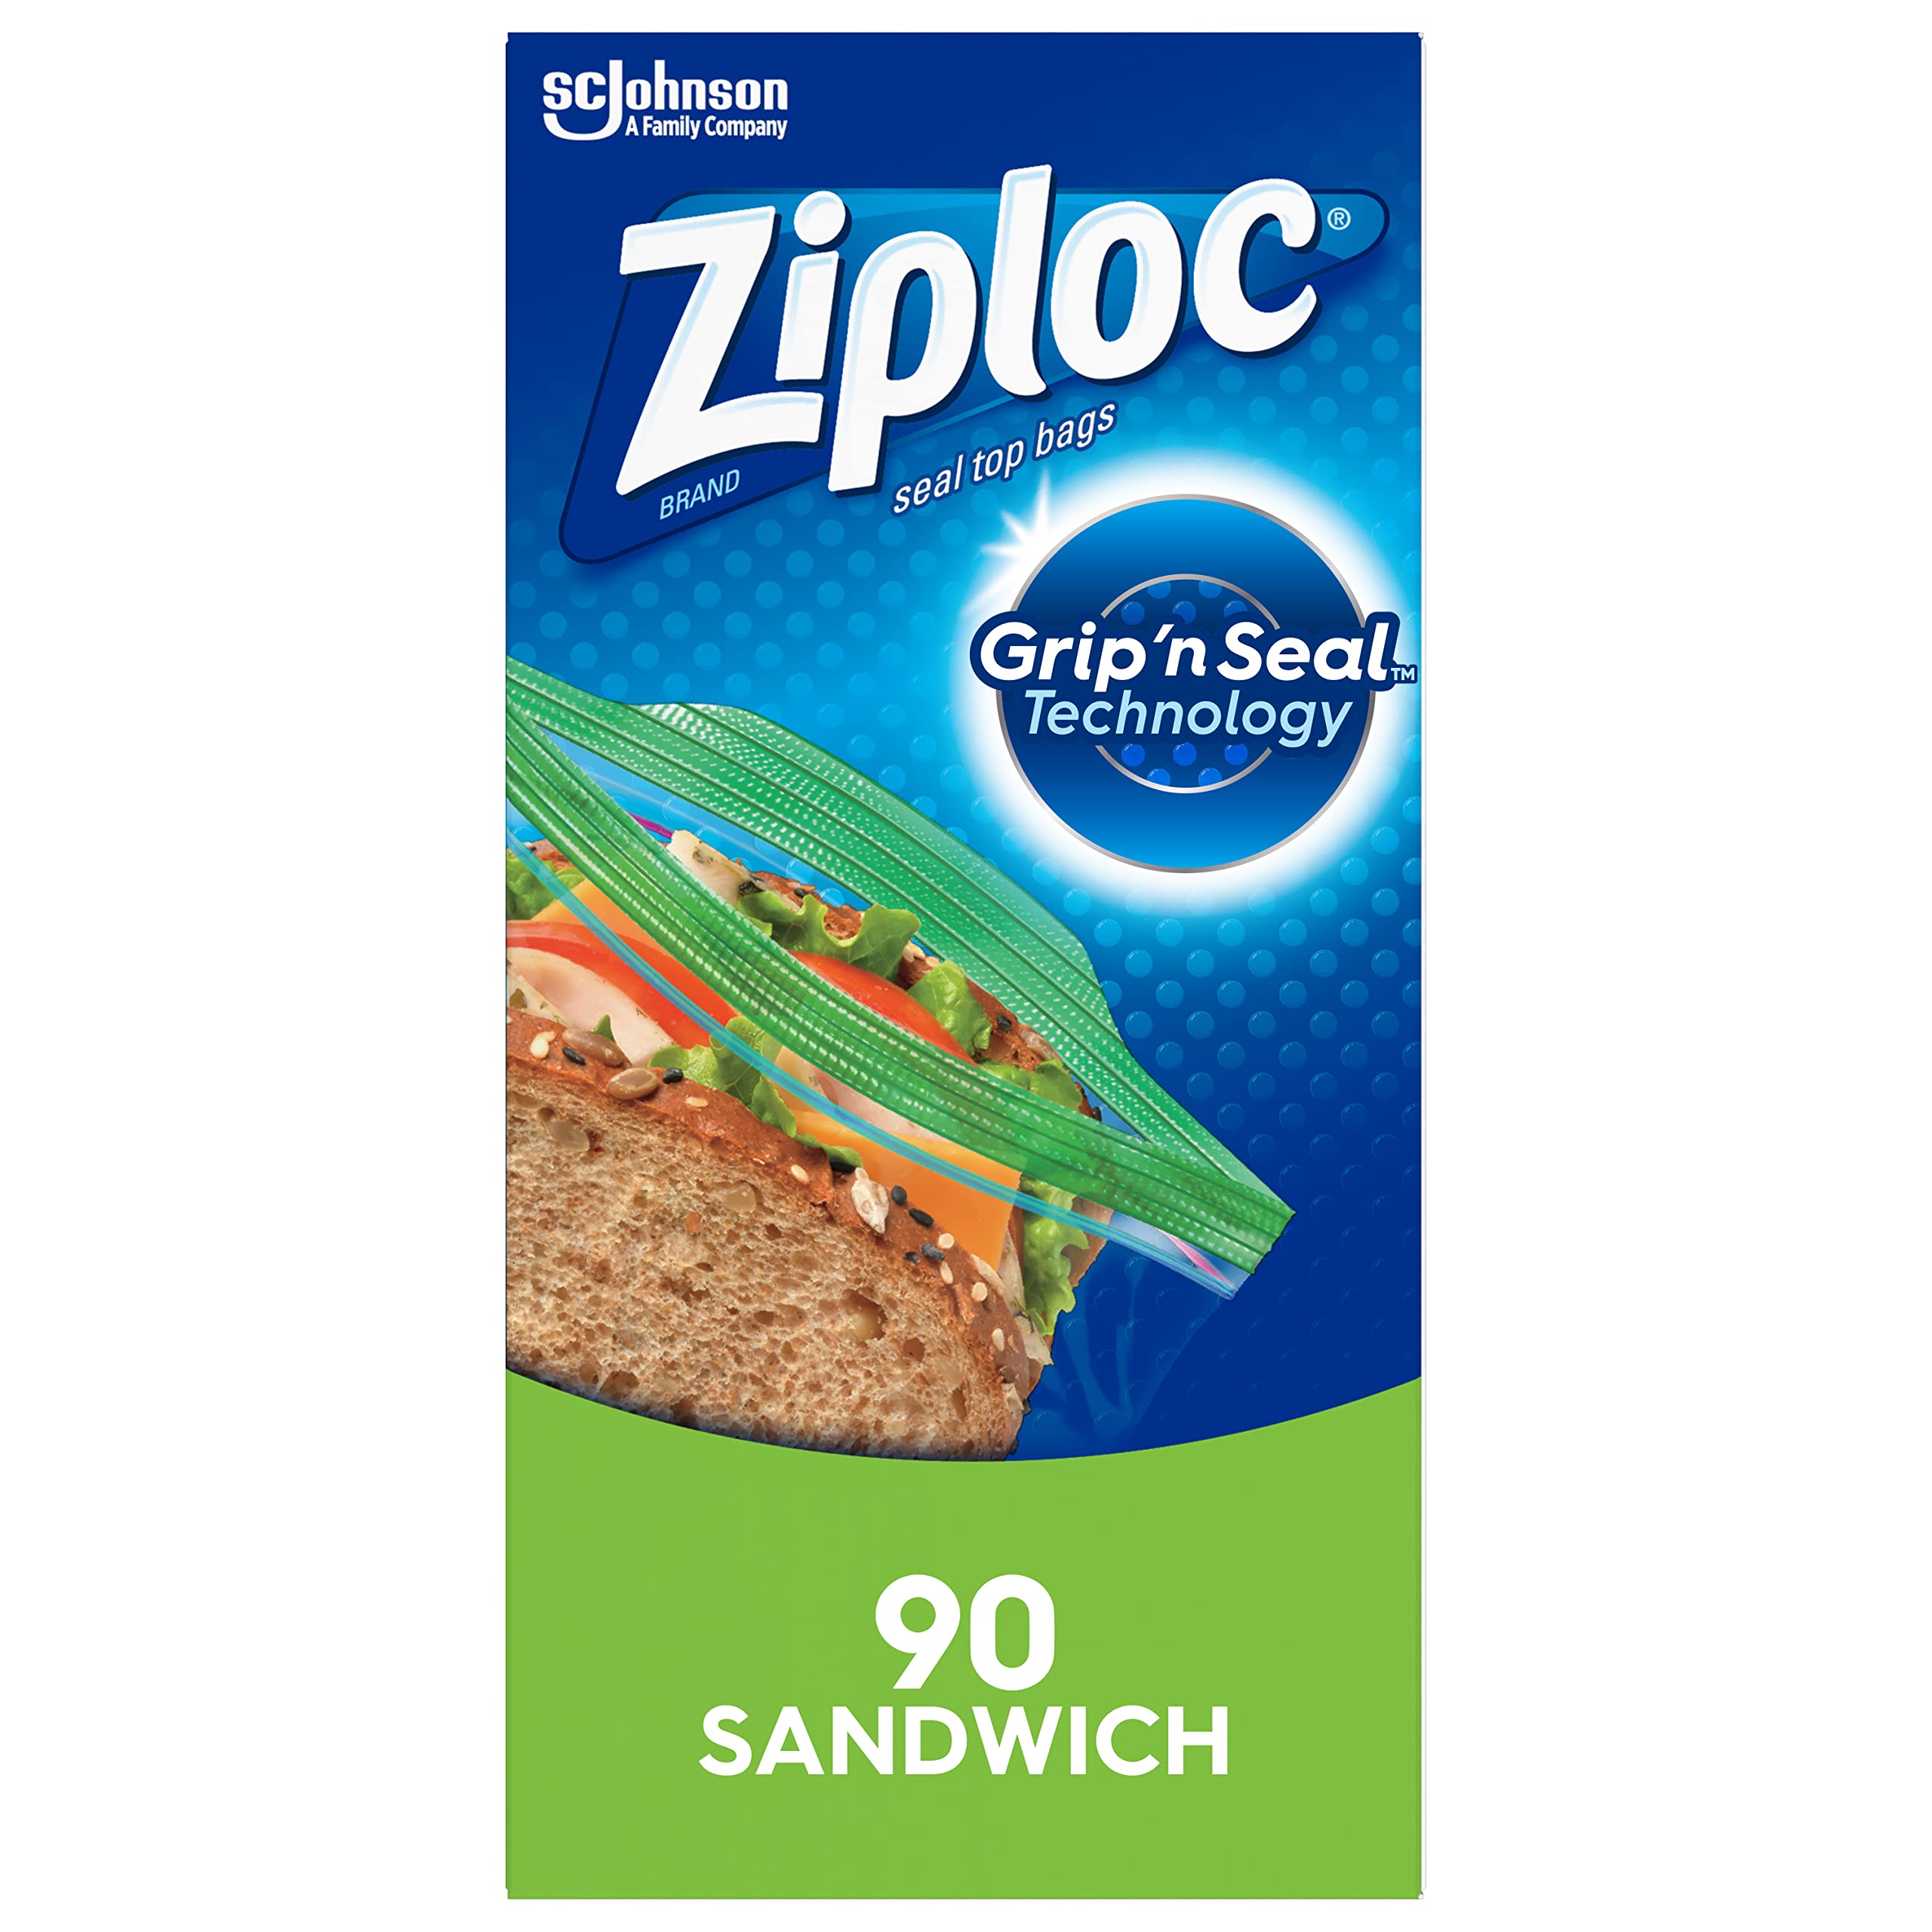 $3.22 /w S&S: 90-Count Ziploc Sandwich & Snack Bags